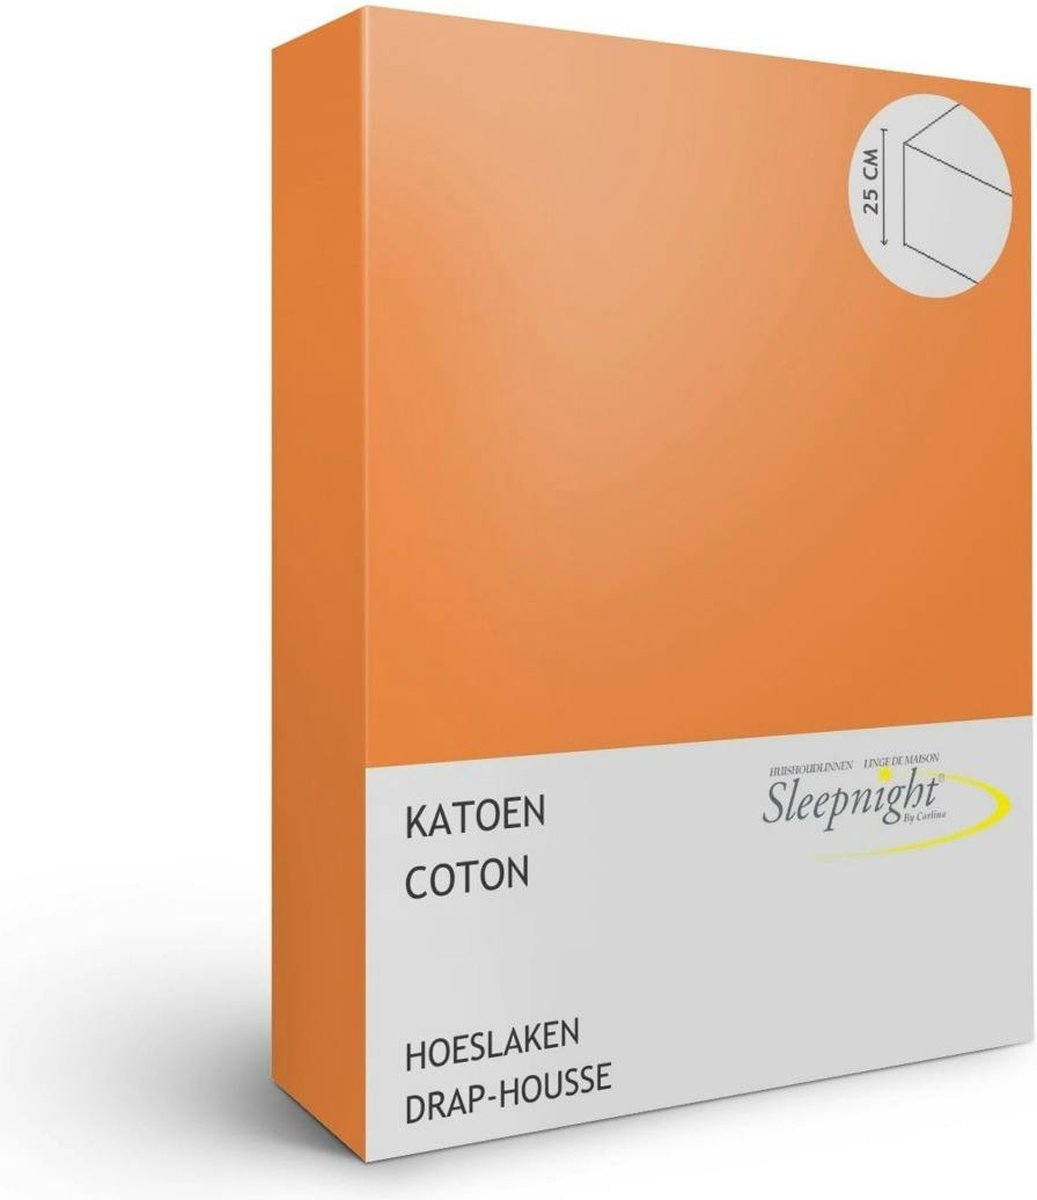 Sleepnight Hoeslaken - Oranje orangeKatoen - LP863537 - B 90 x L 200 cm - Eenpersoons